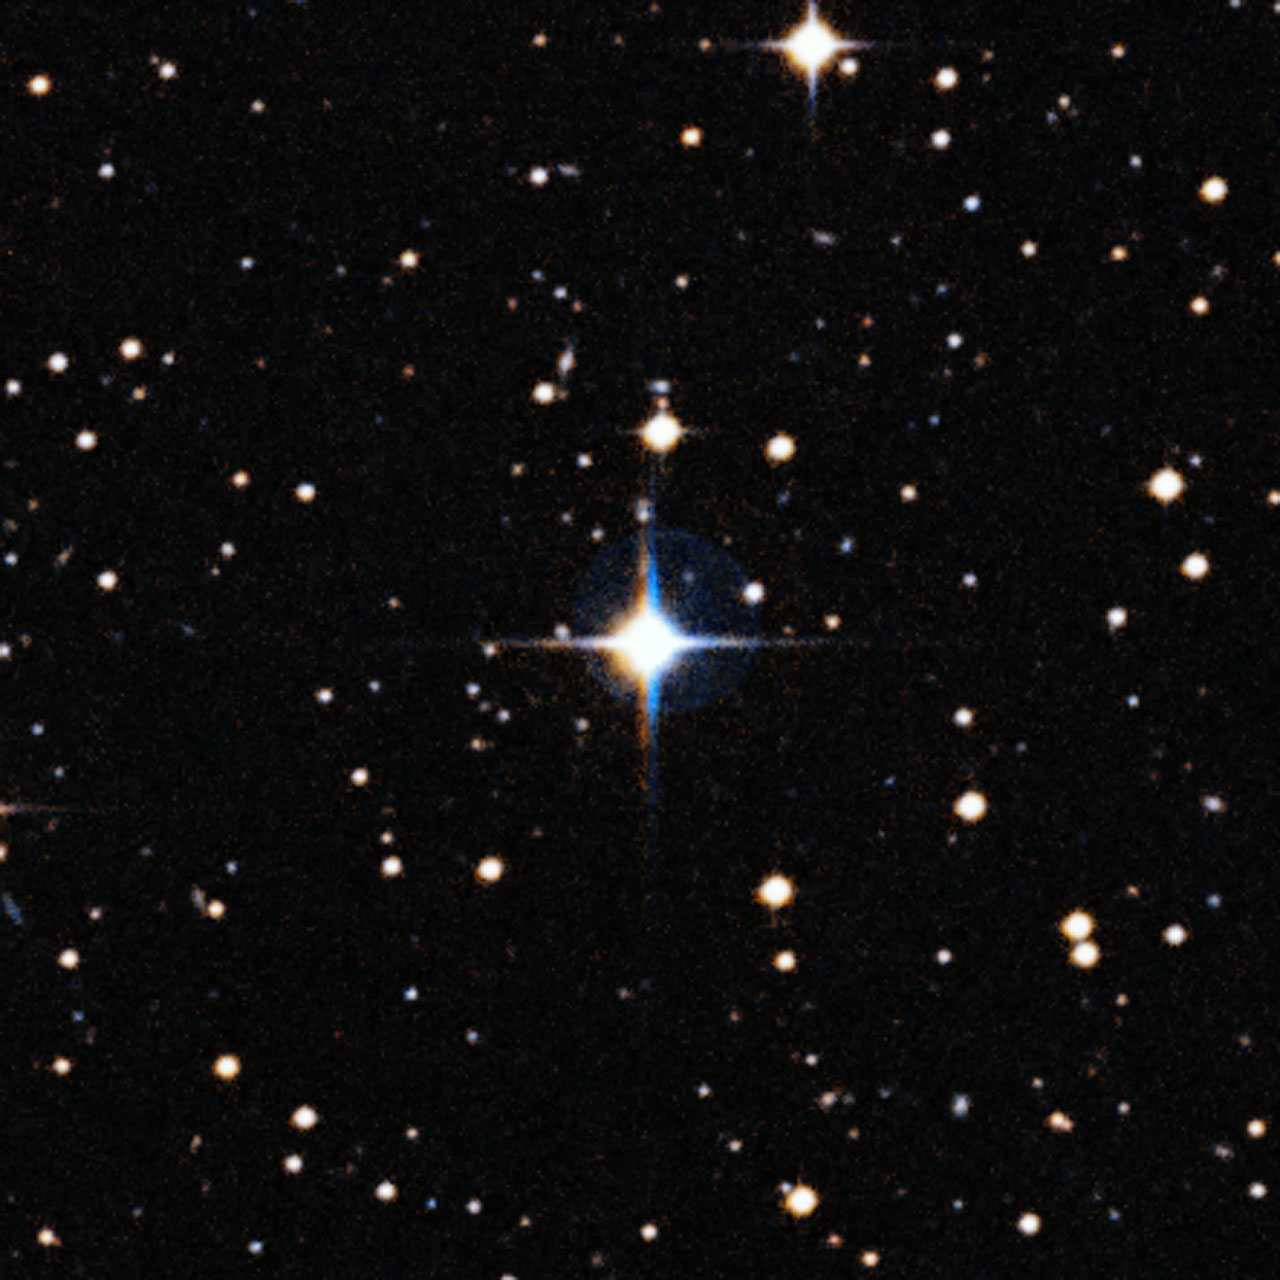 Cette image montre le jumeau solaire HIP 102152, une étoile située à 250 années-lumière de la Terre dans la constellation du Capricorne (la Chèvre de Mer). HIP 102152 ressemble davantage au Soleil que tout autre jumeau solaire – mis à part le fait qu'il est plus âgé d'environ quatre milliards d'années, ce qui nous offre l'opportunité sans précédent d'étudier le vieillissement du Soleil. Il s'agit du plus vieux jumeau solaire identifié à ce jour. Il a fait l'objet d'une étude détaillée de la part d'une équipe internationale dirigée par des astronomes au Brésil et utilisant le VLT de l'Eso. © Eso/Digitized Sky Survey 2- Davide De Martin